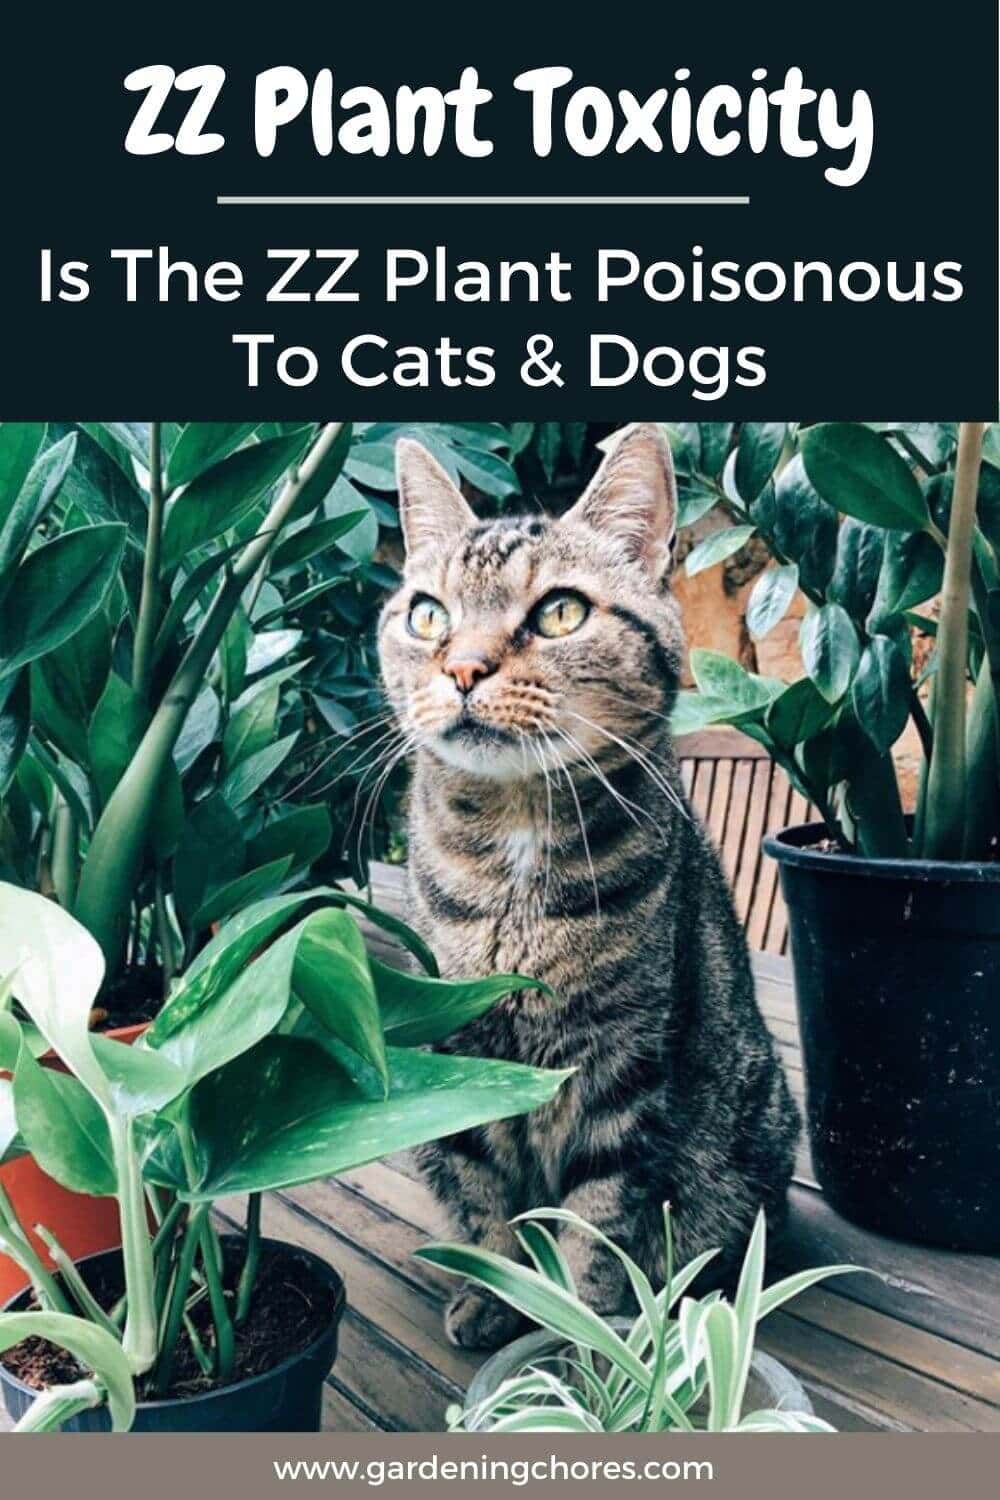  Toxicité de la plante ZZ : La plante ZZ est-elle toxique pour les chats, les chiens et les enfants ?